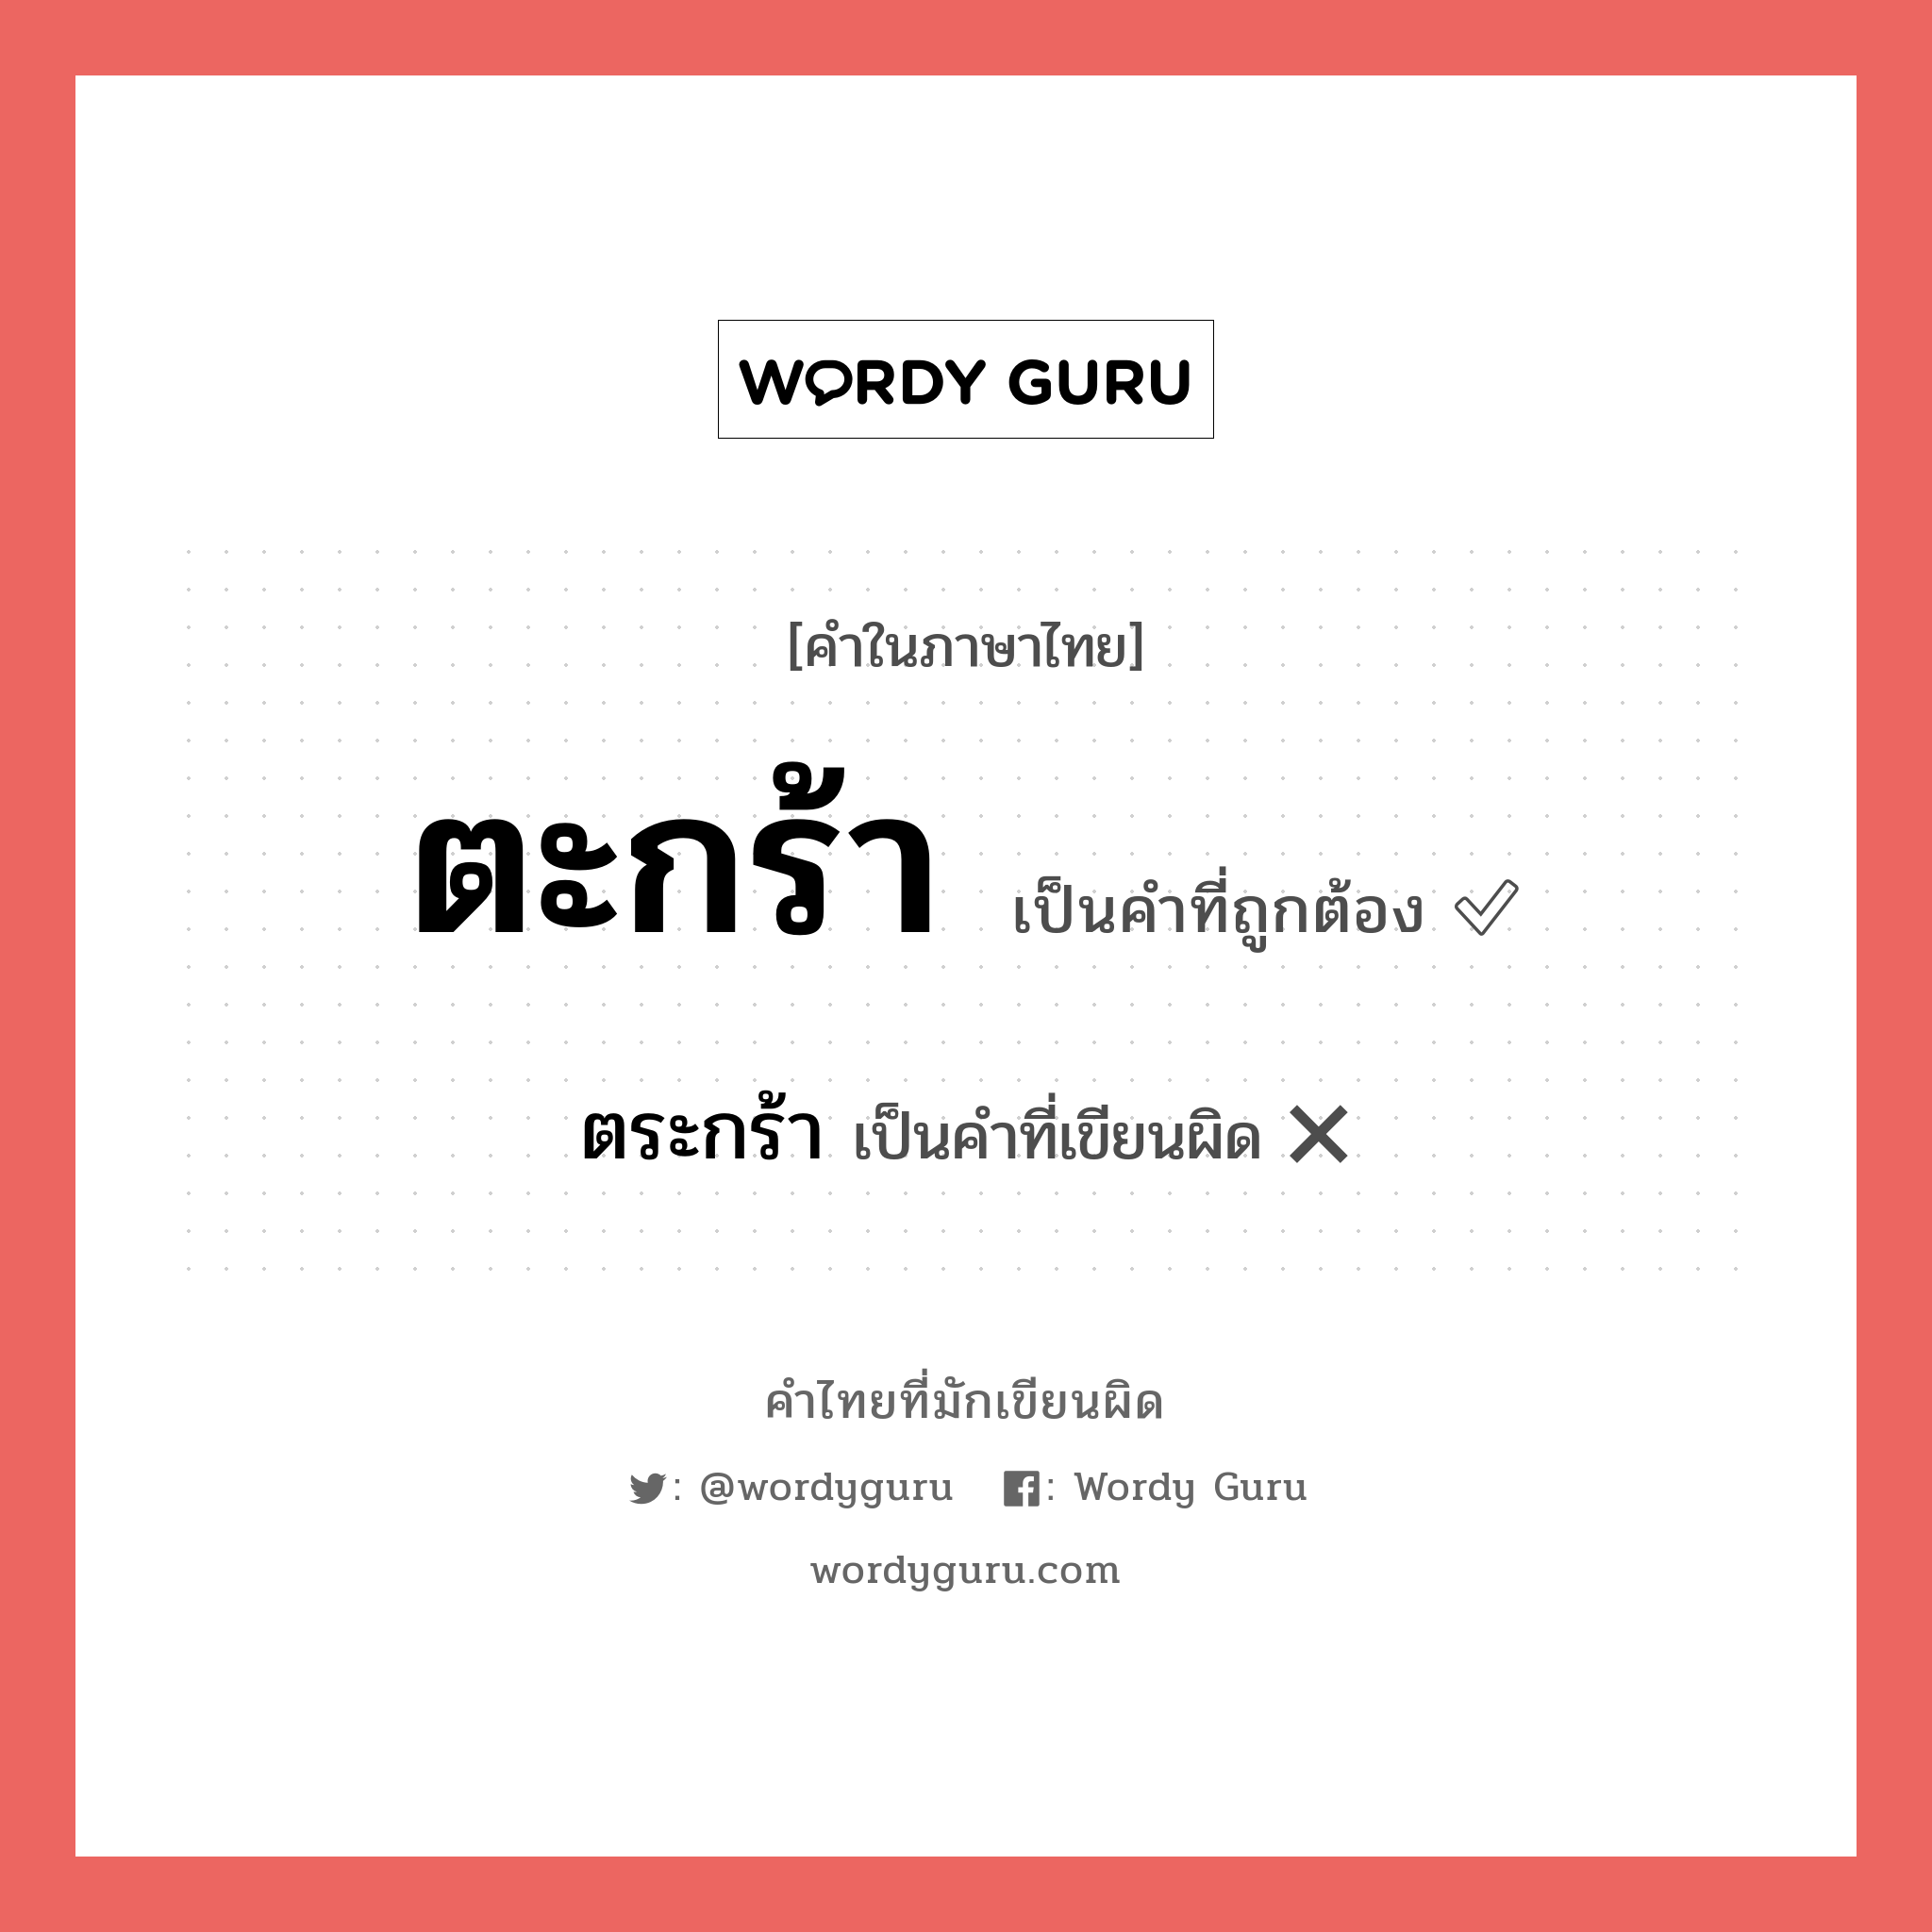 ตะกร้า หรือ ตระกร้า คำไหนเขียนถูก?, คำในภาษาไทยที่มักเขียนผิด ตะกร้า คำที่ผิด ❌ ตระกร้า